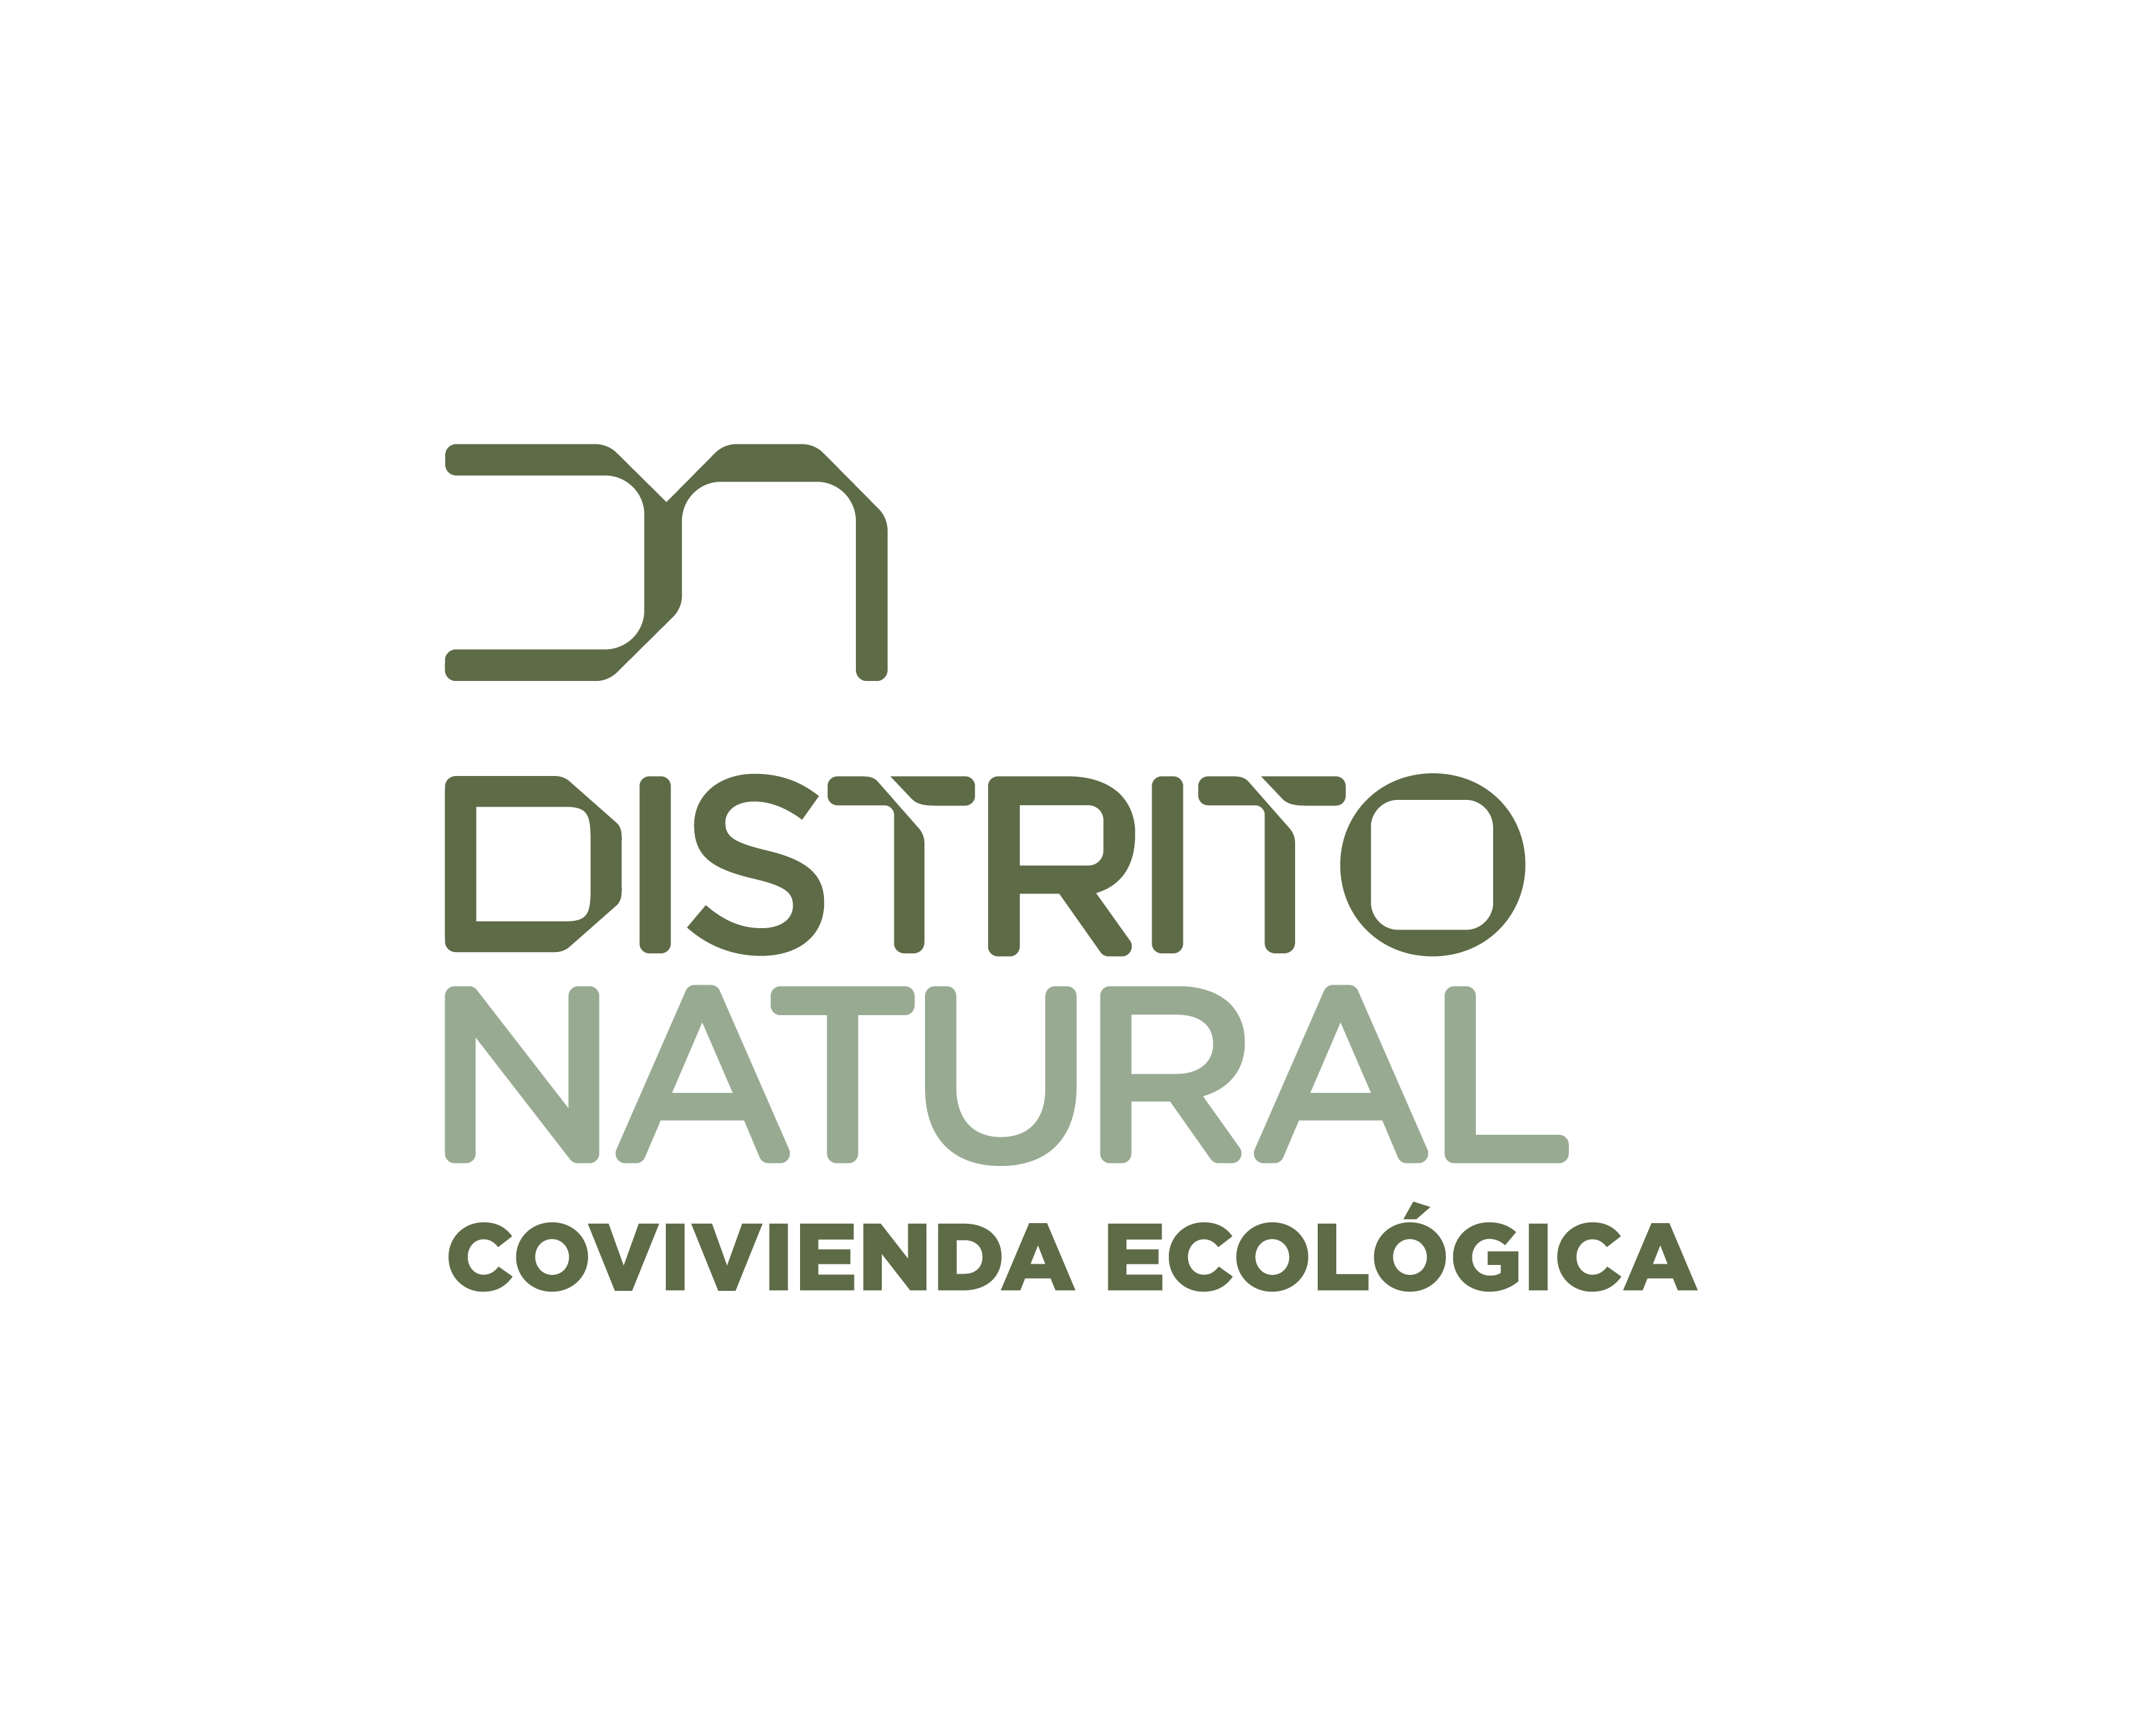 DISTRITO NATURAL logo